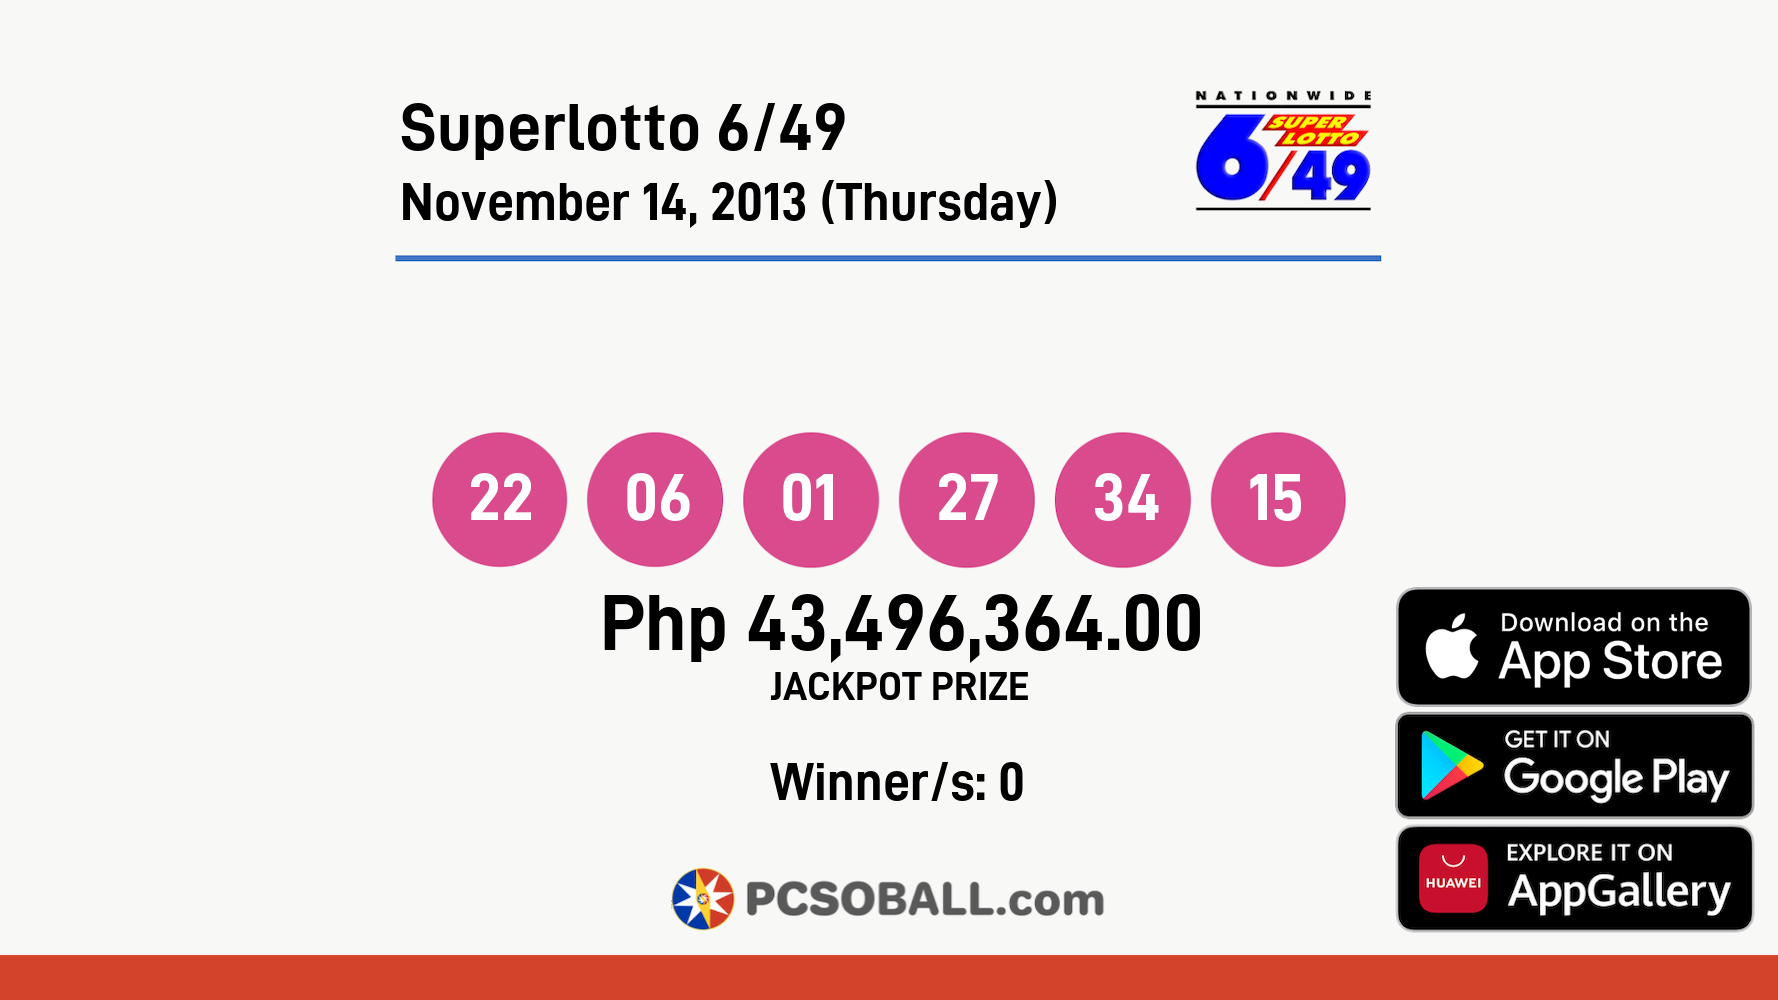 Superlotto 6/49 November 14, 2013 (Thursday) Result